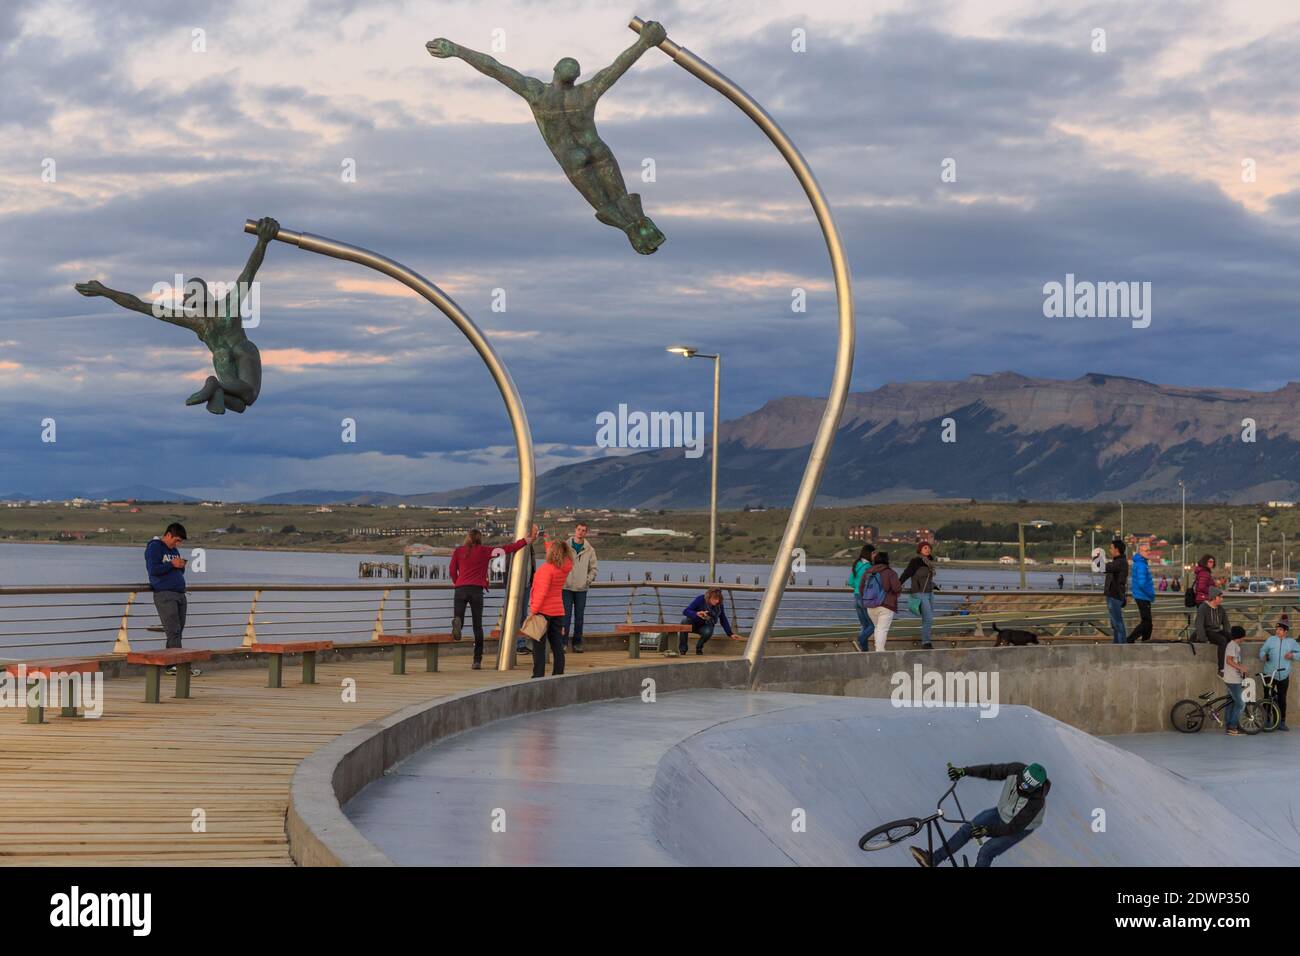 Parc de skate et monument au vent (monumento al viento) dans la ville de Puerto Natales, Patagonie, Chili Banque D'Images